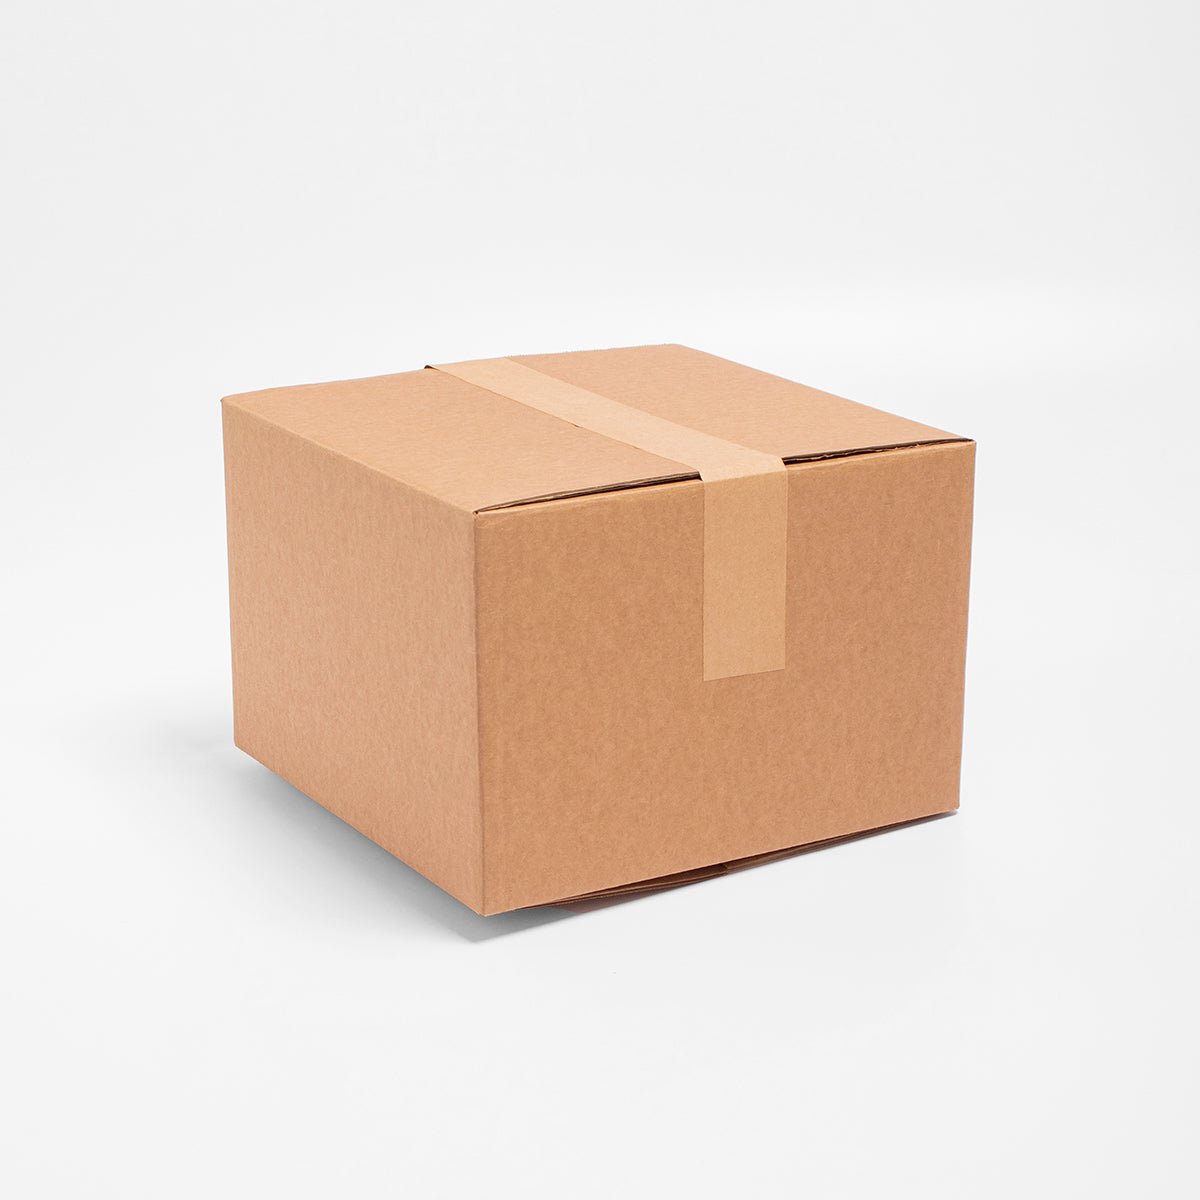 Caja de Cartón - 20 x 20 x 20 cm - Cuadrada - Skyboxes México